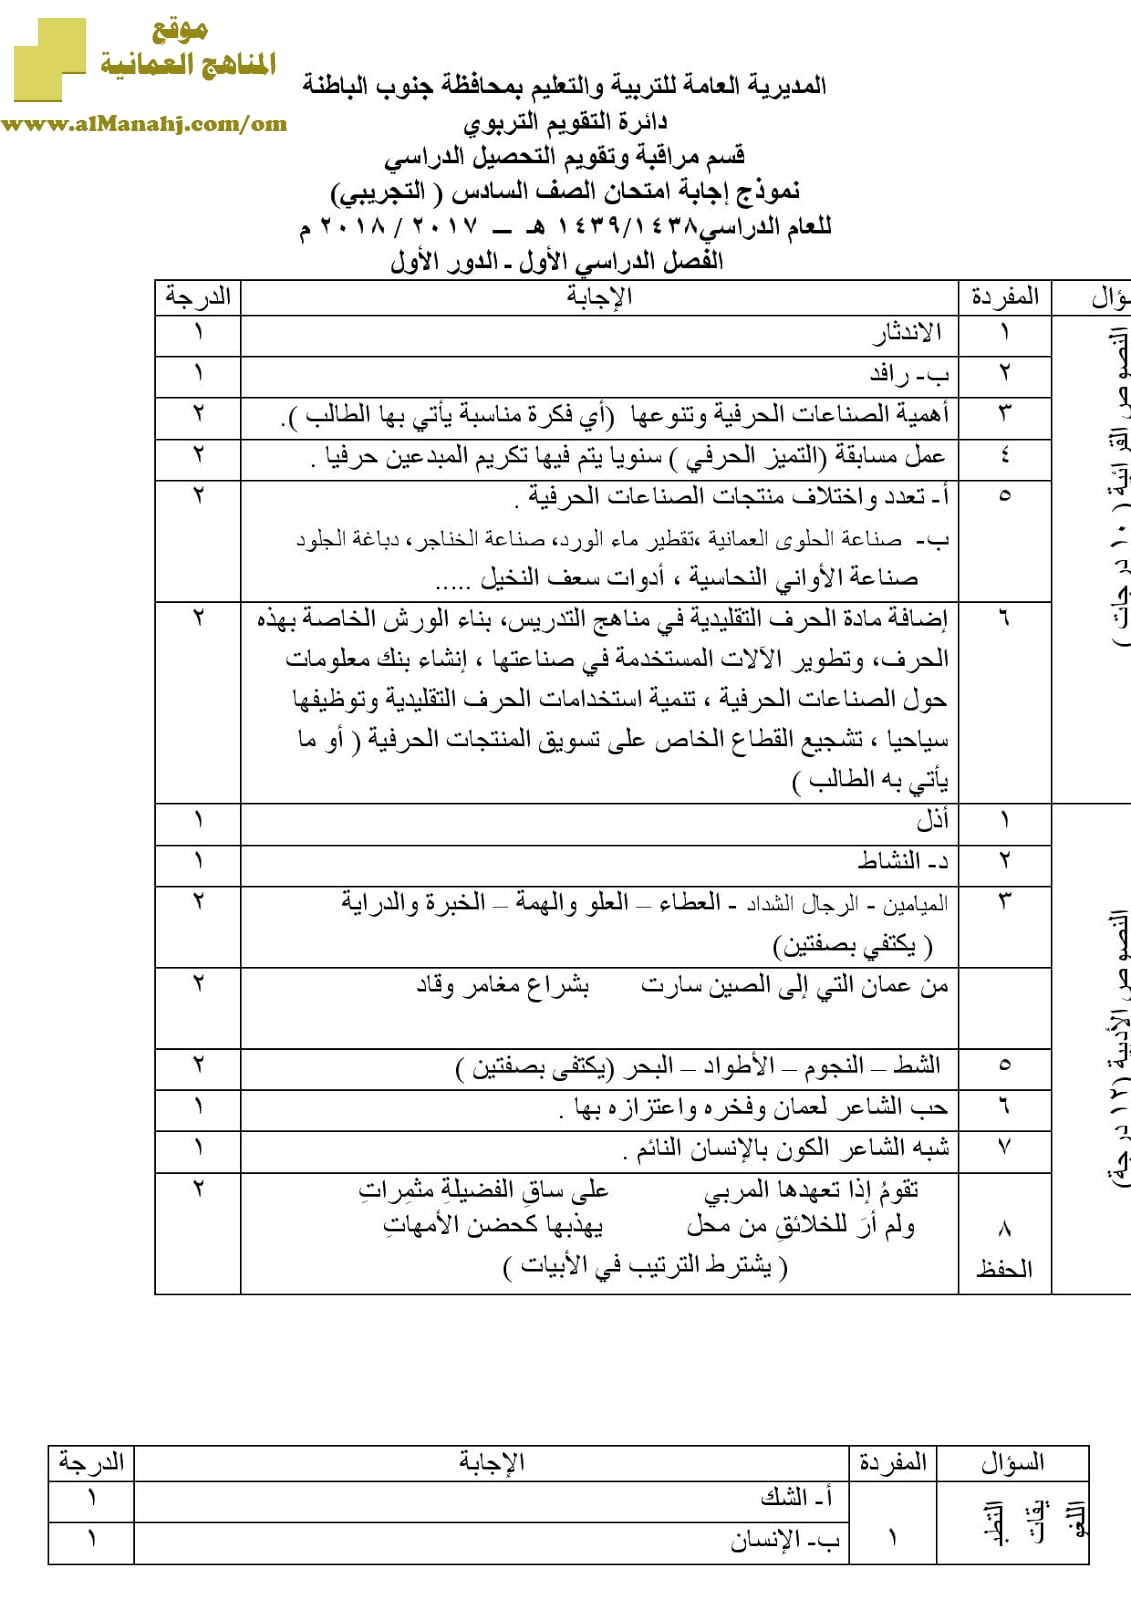 نموذج أسئلة و إجابة الامتحان التجريبي في محافظة جنوب الباطنة للفصل الدراسي الأول الدور الأول (لغة عربية) السادس